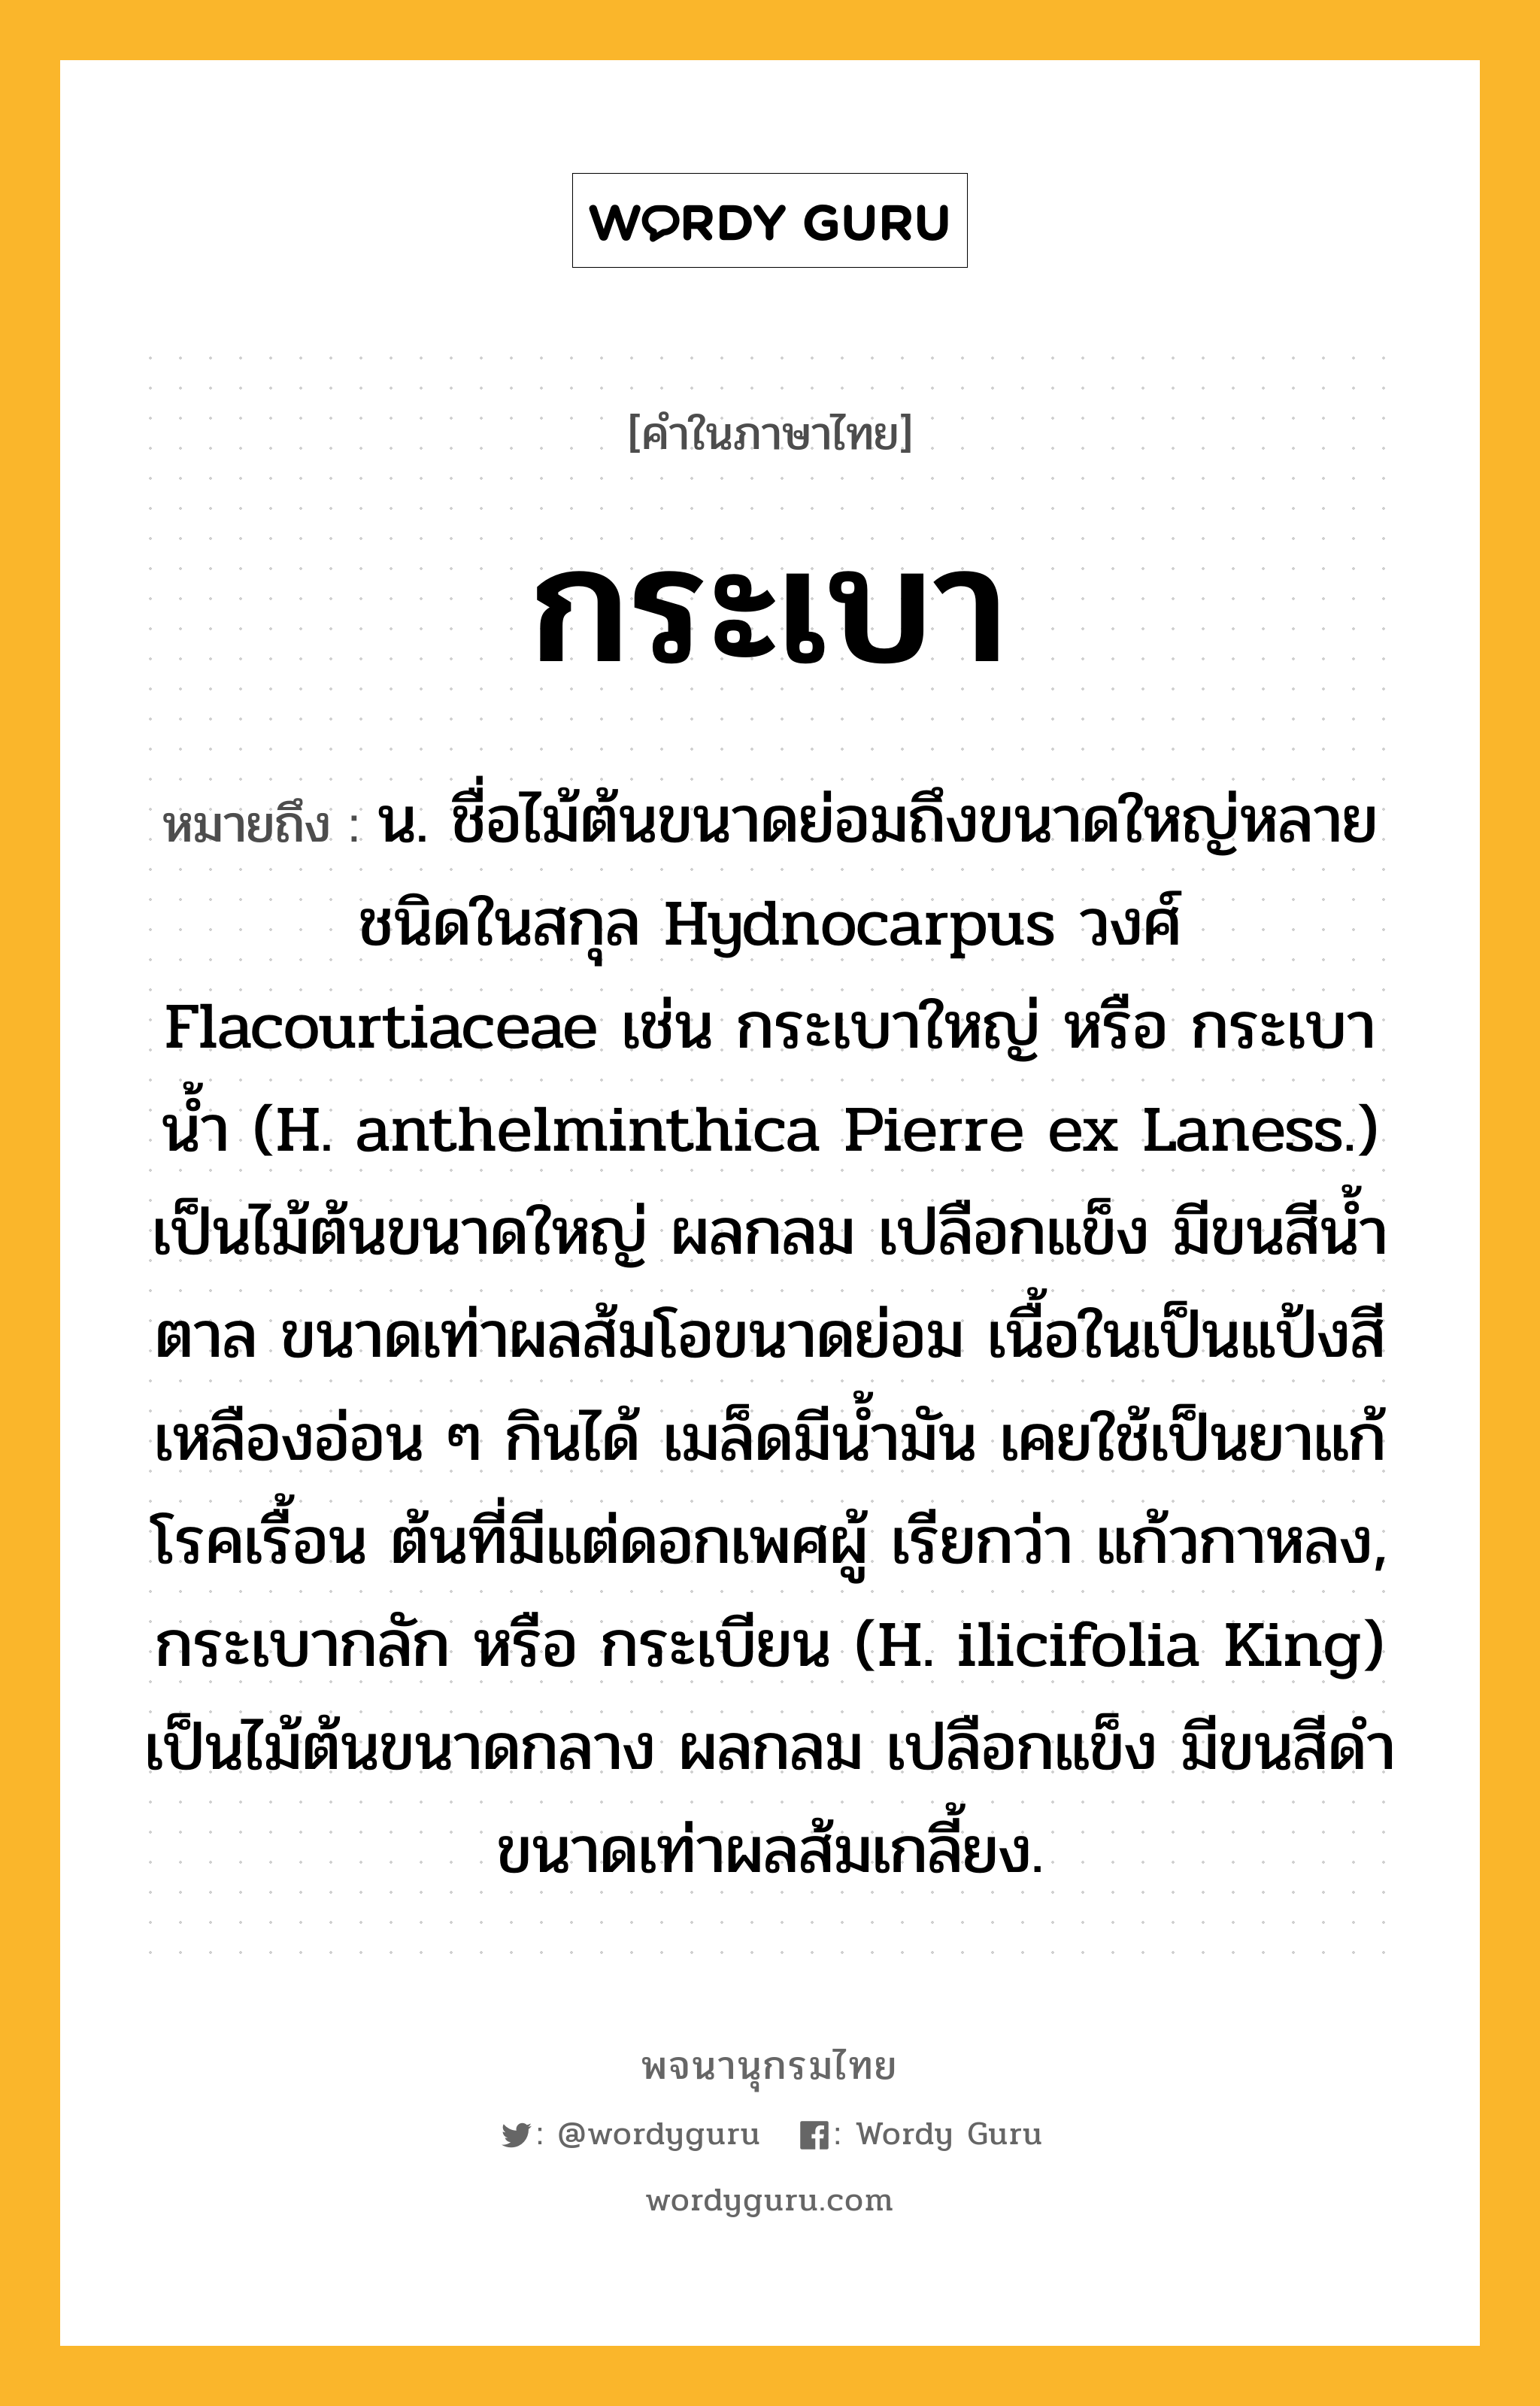 กระเบา ความหมาย หมายถึงอะไร?, คำในภาษาไทย กระเบา หมายถึง น. ชื่อไม้ต้นขนาดย่อมถึงขนาดใหญ่หลายชนิดในสกุล Hydnocarpus วงศ์ Flacourtiaceae เช่น กระเบาใหญ่ หรือ กระเบานํ้า (H. anthelminthica Pierre ex Laness.) เป็นไม้ต้นขนาดใหญ่ ผลกลม เปลือกแข็ง มีขนสีนํ้าตาล ขนาดเท่าผลส้มโอขนาดย่อม เนื้อในเป็นแป้งสีเหลืองอ่อน ๆ กินได้ เมล็ดมีนํ้ามัน เคยใช้เป็นยาแก้โรคเรื้อน ต้นที่มีแต่ดอกเพศผู้ เรียกว่า แก้วกาหลง, กระเบากลัก หรือ กระเบียน (H. ilicifolia King) เป็นไม้ต้นขนาดกลาง ผลกลม เปลือกแข็ง มีขนสีดํา ขนาดเท่าผลส้มเกลี้ยง.